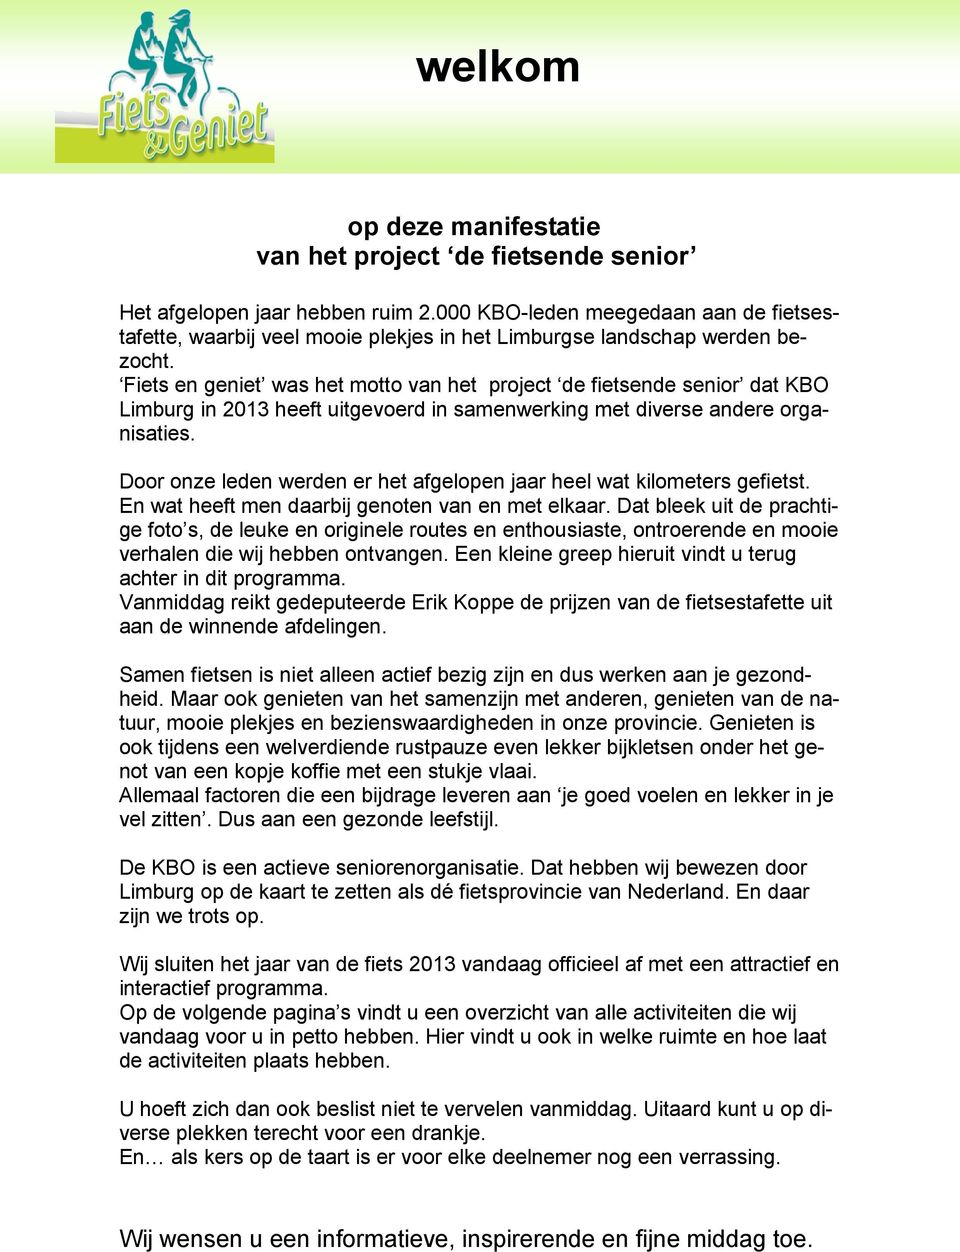 Fiets en geniet was het motto van het project de fietsende senior dat KBO Limburg in 2013 heeft uitgevoerd in samenwerking met diverse andere organisaties.